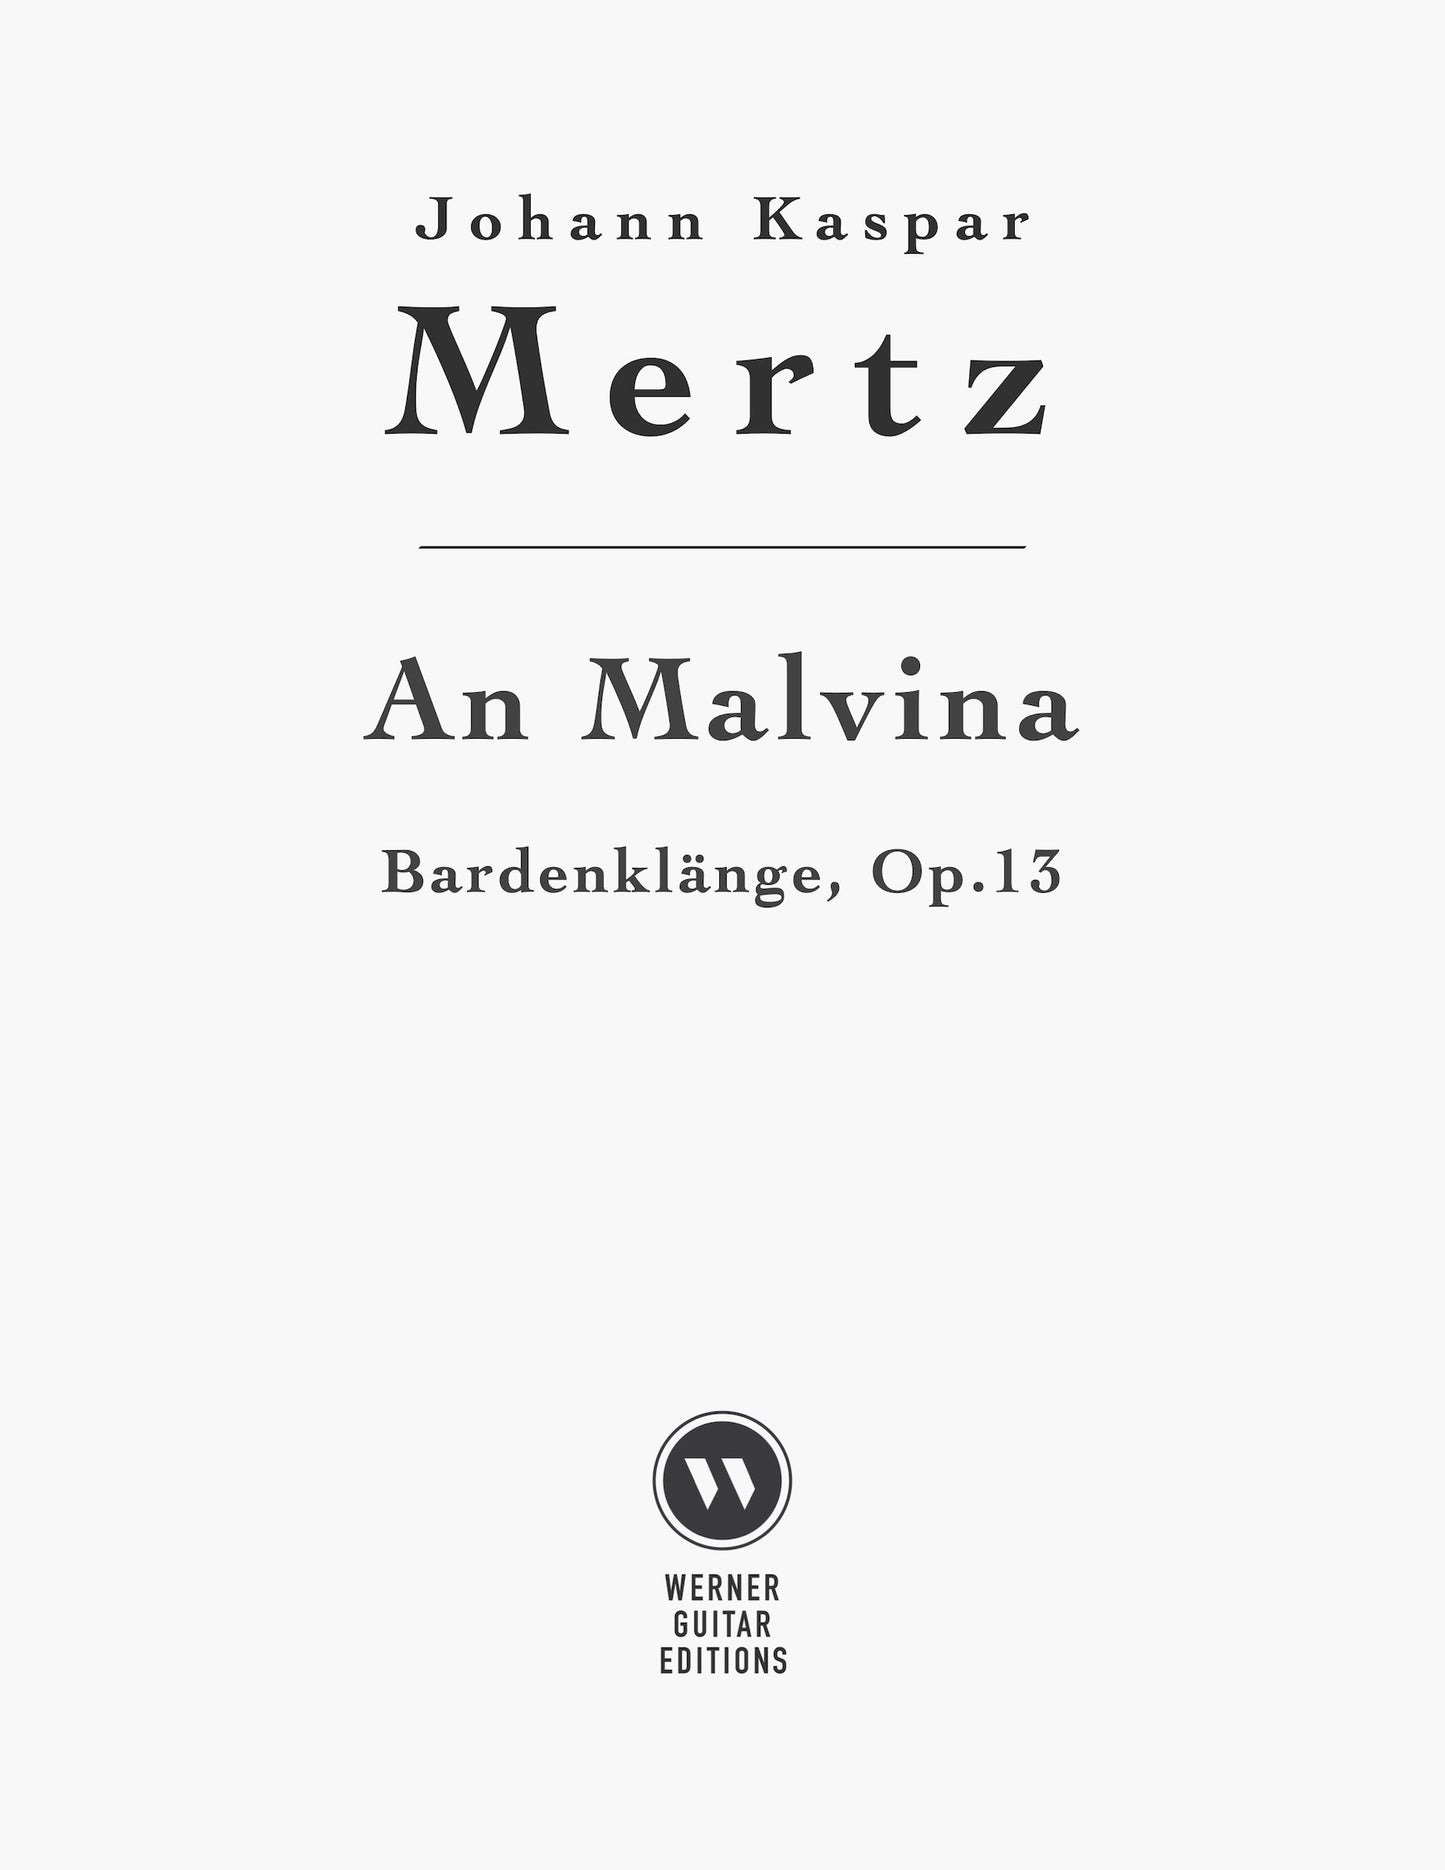 An Malvina by Mertz for Guitar (PDF)